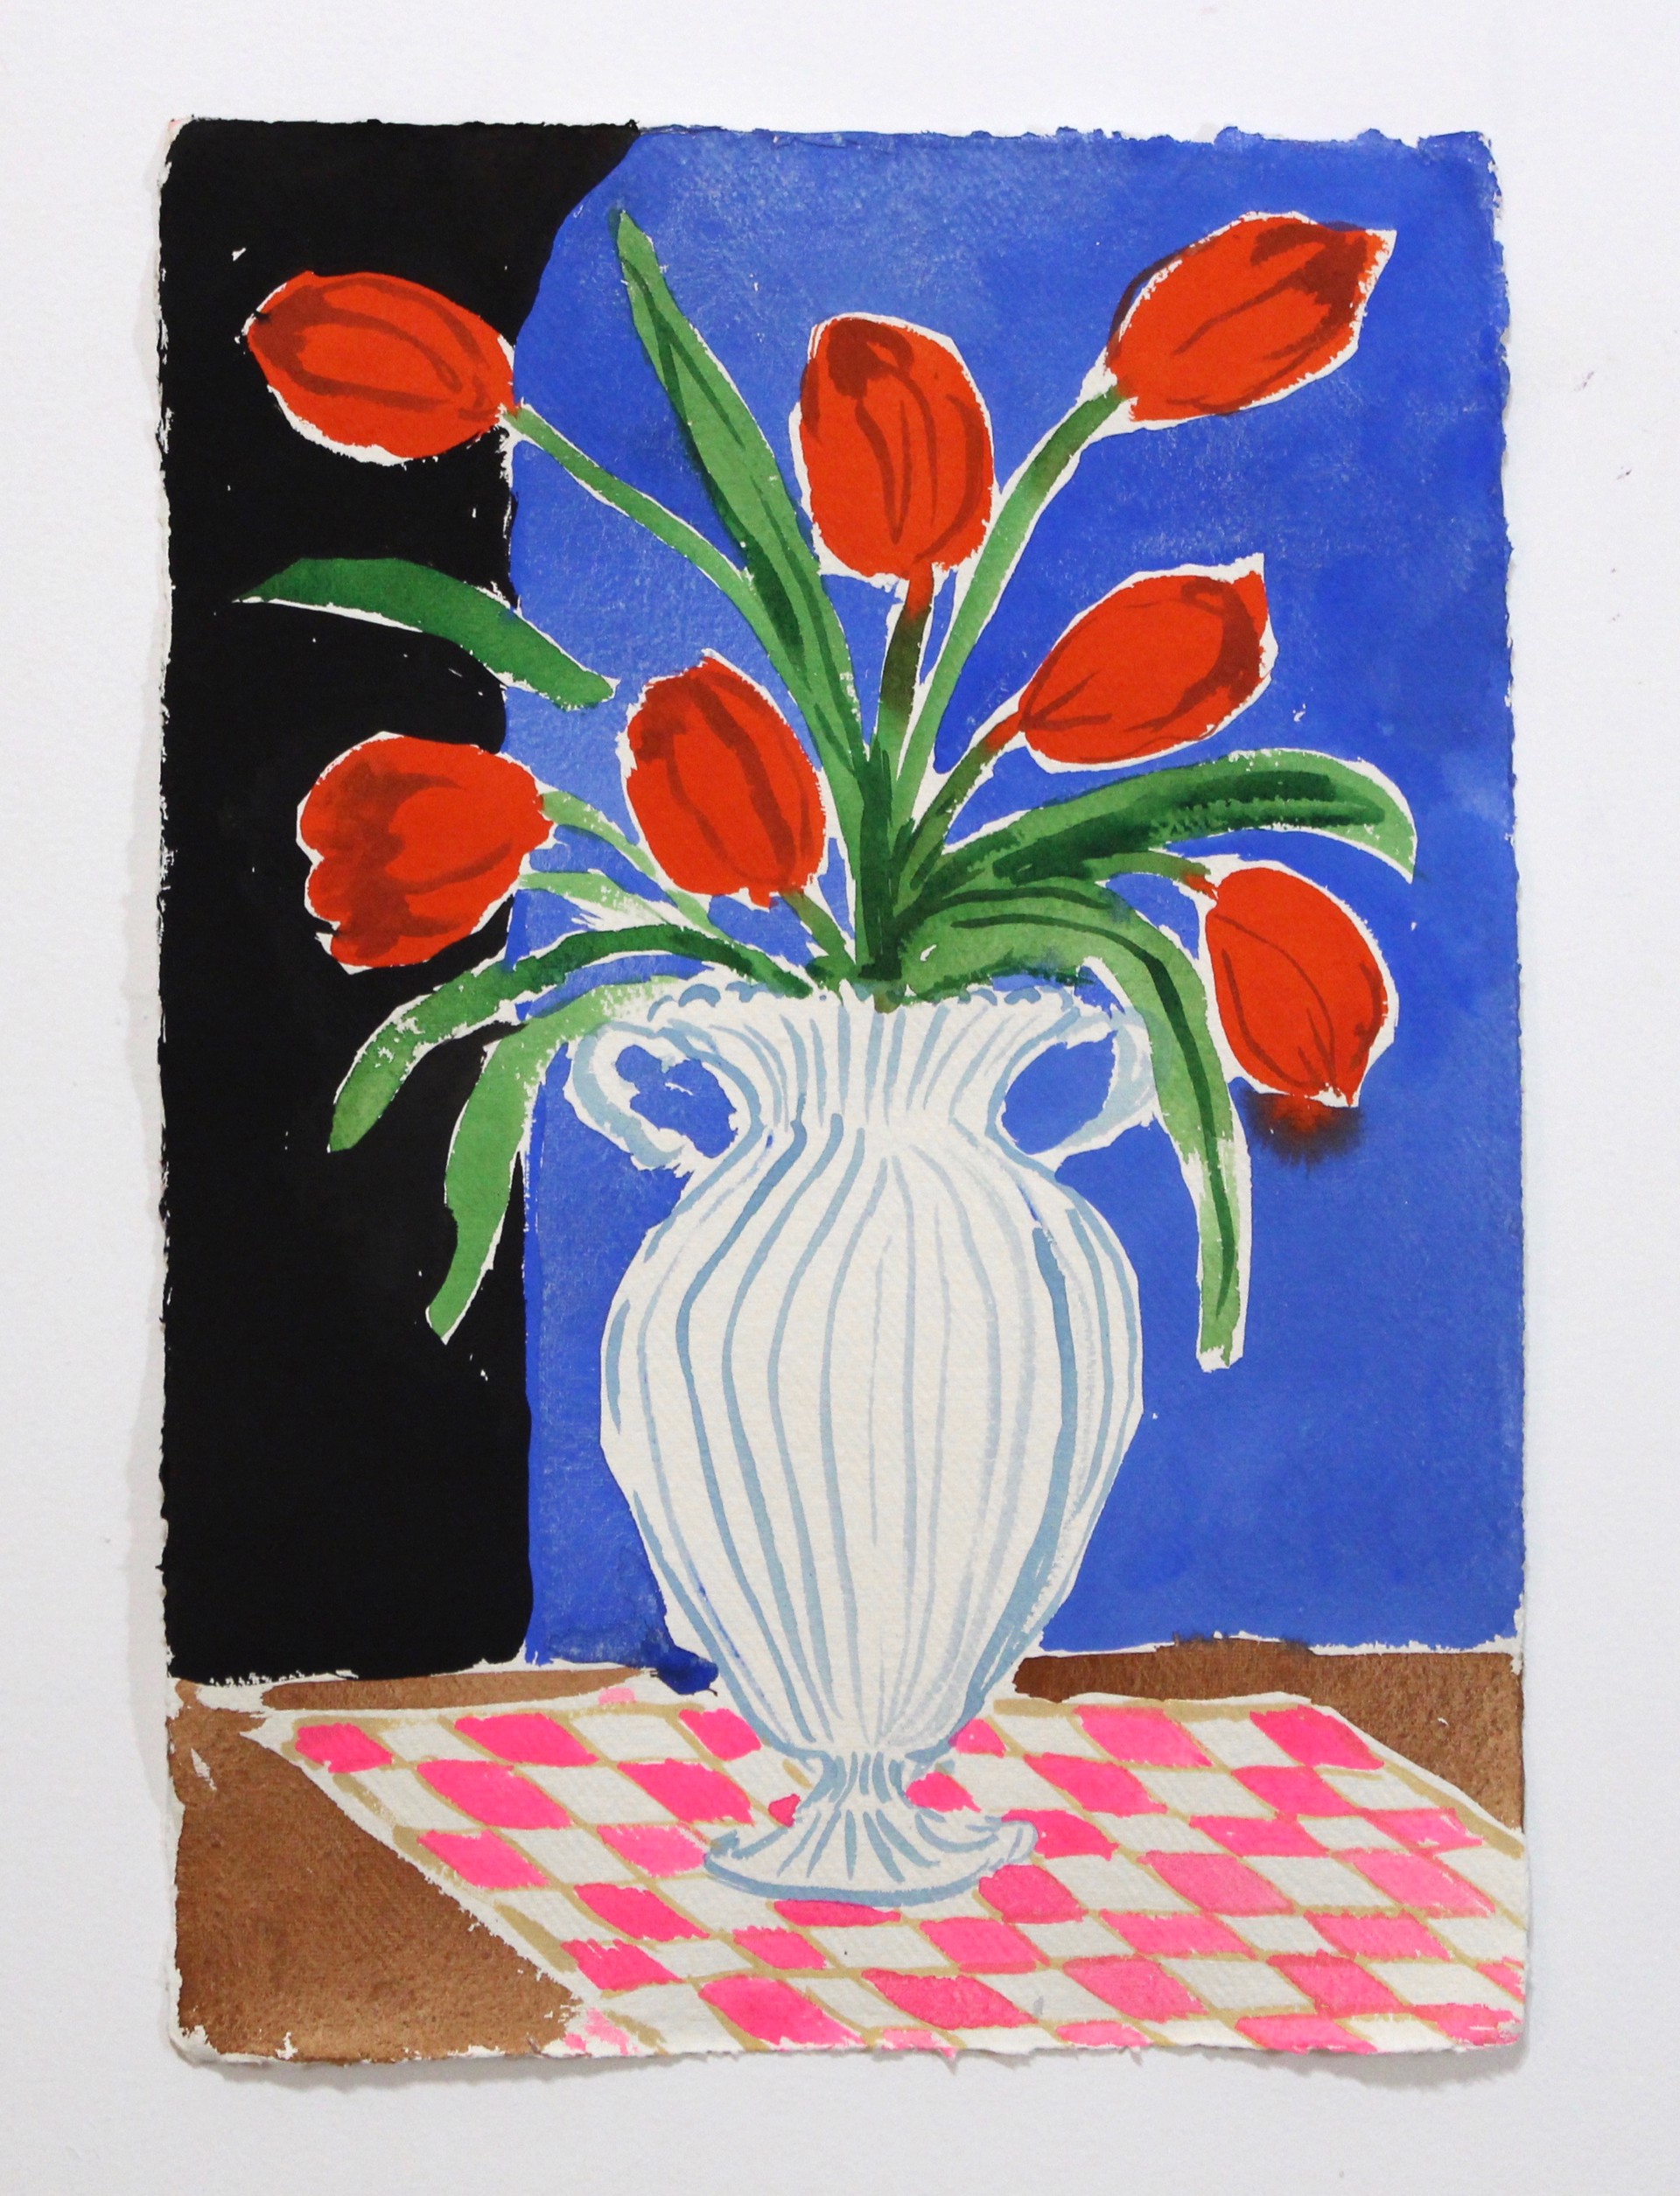 Red Tulips by Kayla Plosz Antiel